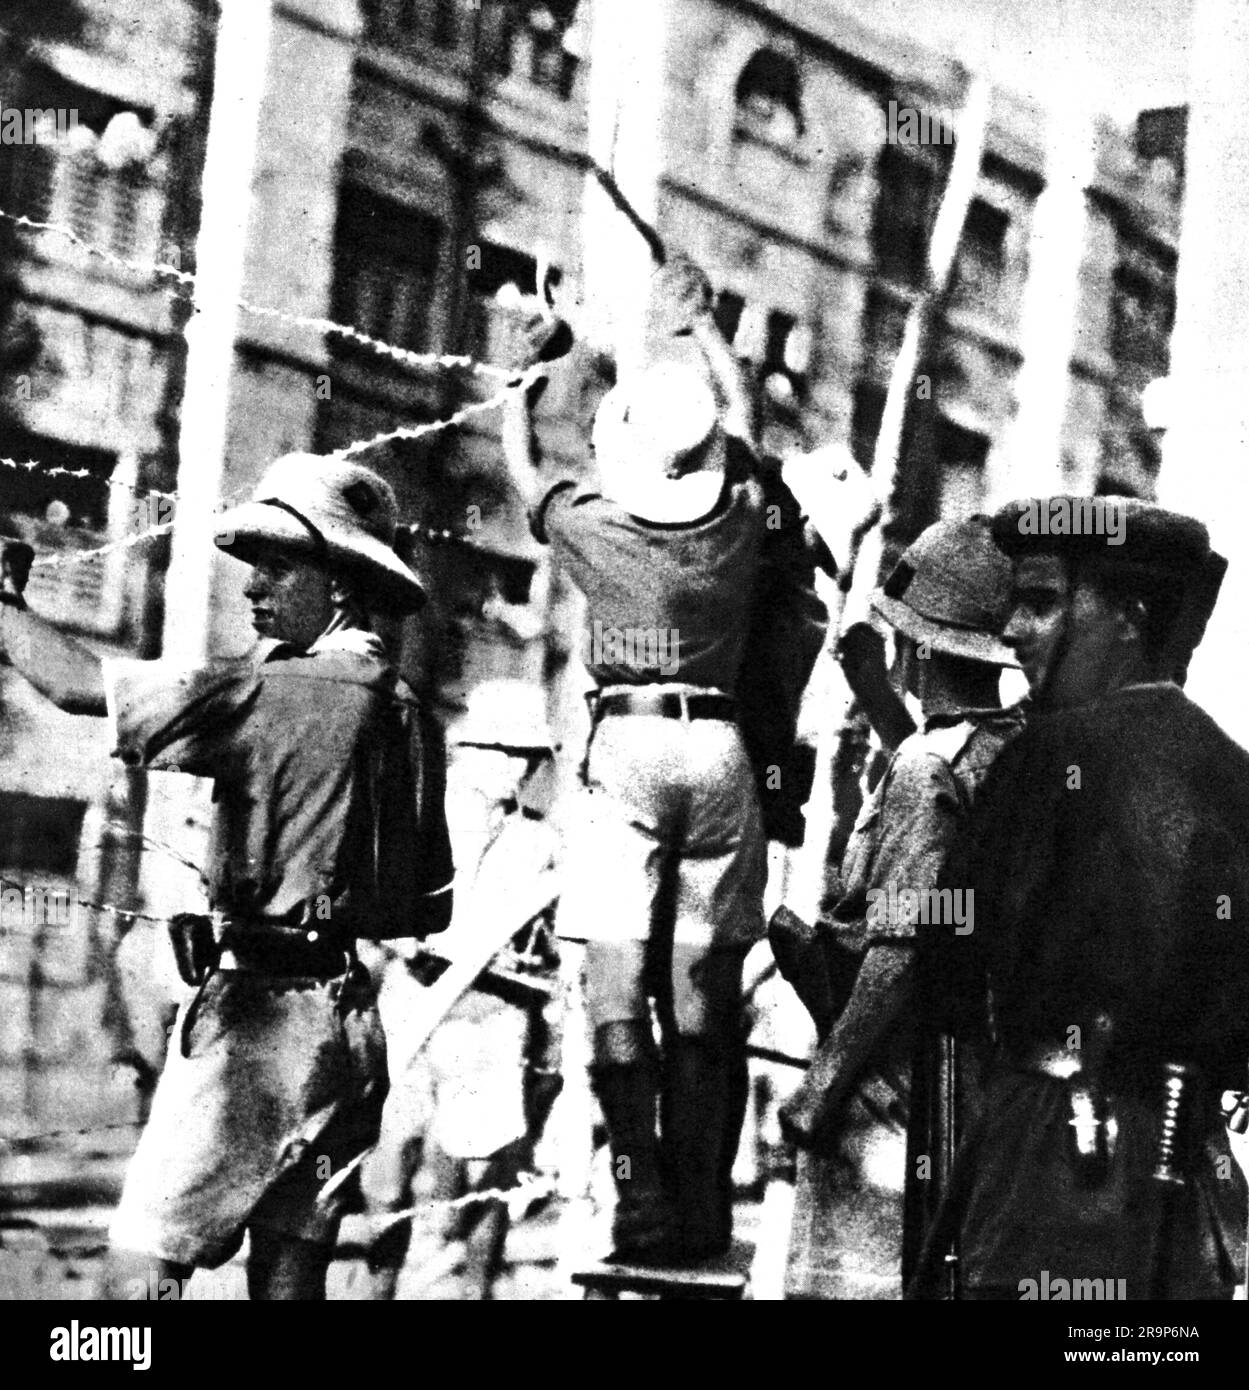 Indische Unabhängigkeitsbewegung 1858 - 1947, britische Soldaten bauen einen Zaun aus Stacheldraht, ZUSÄTZLICHE-RECHTE-FREIGABE-INFO-NICHT-VERFÜGBAR Stockfoto